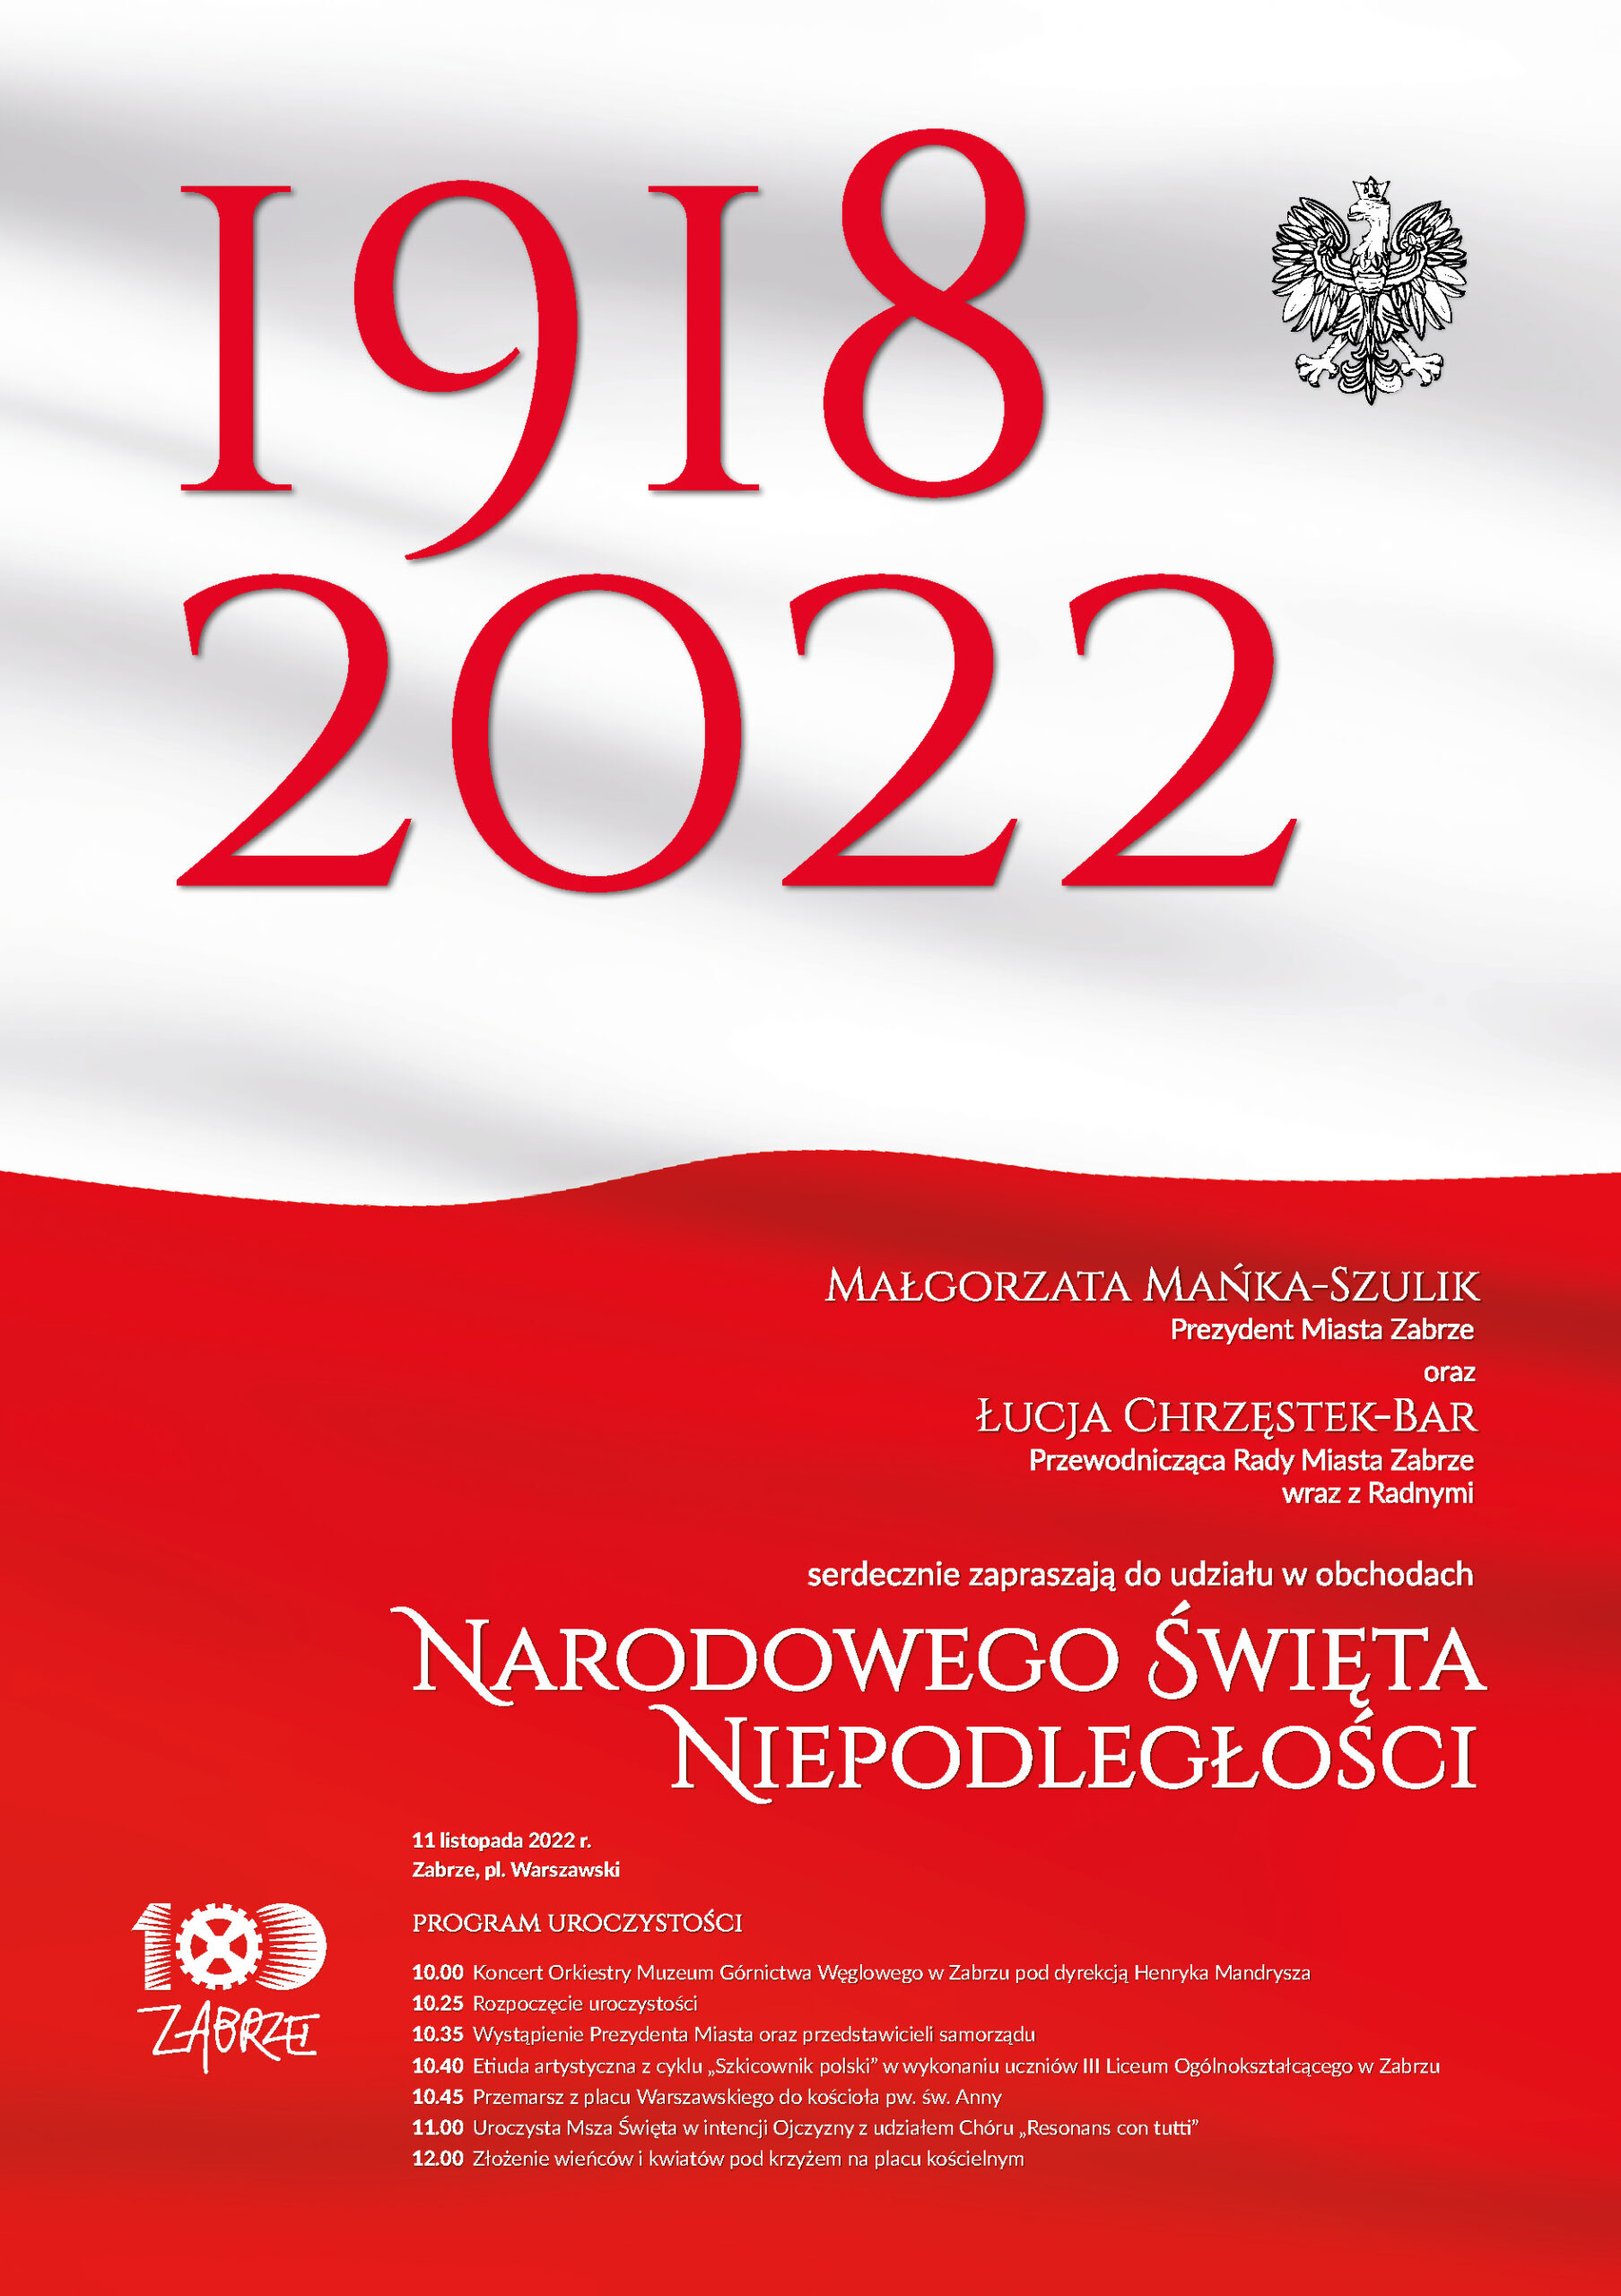 biało-czerwony plakat z programem obchodów Narodowego Święta Niepodległości